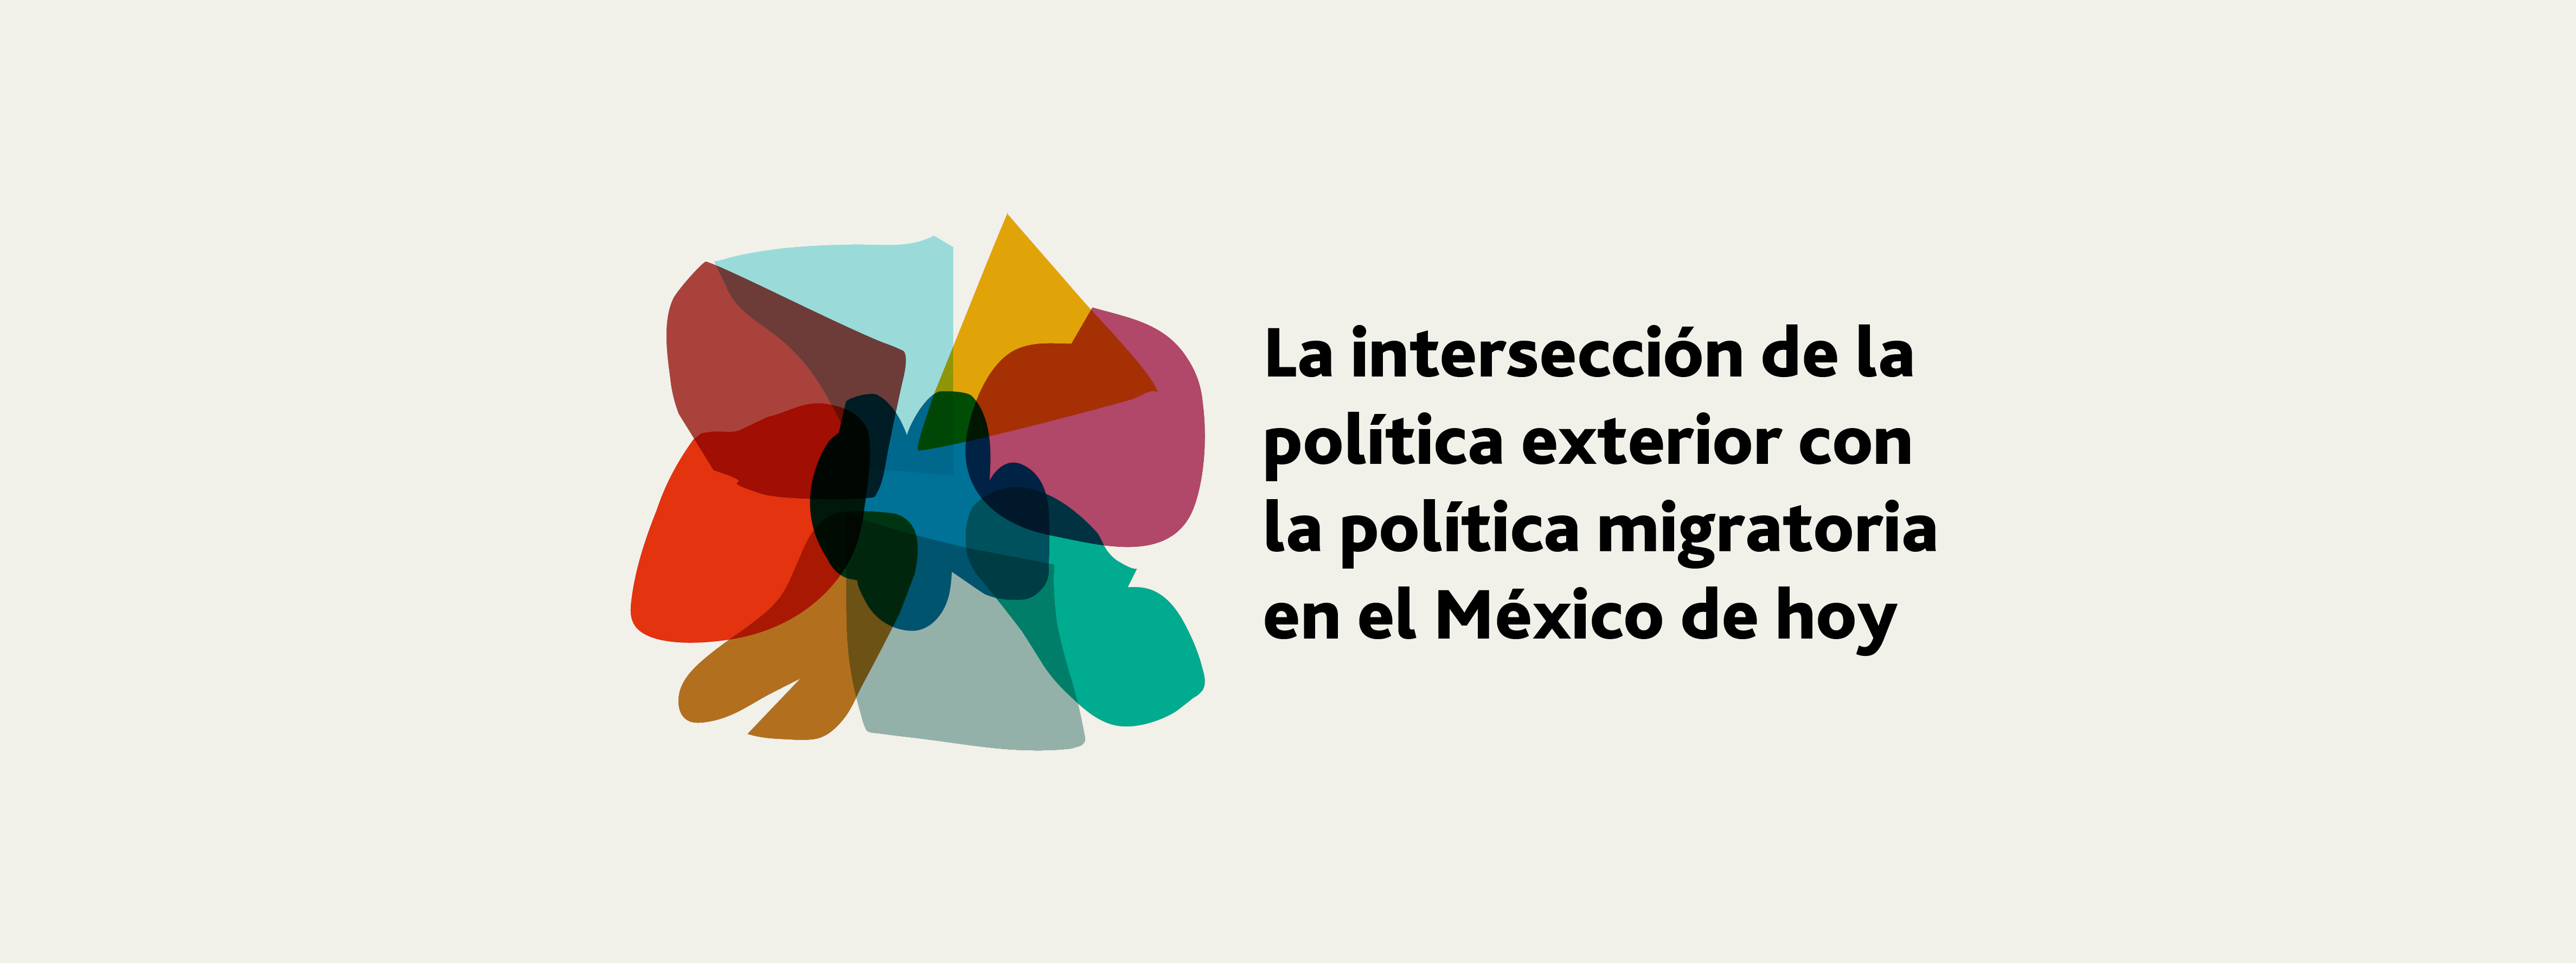 La intersección de la política exterior y la política migratoria en el México de hoy